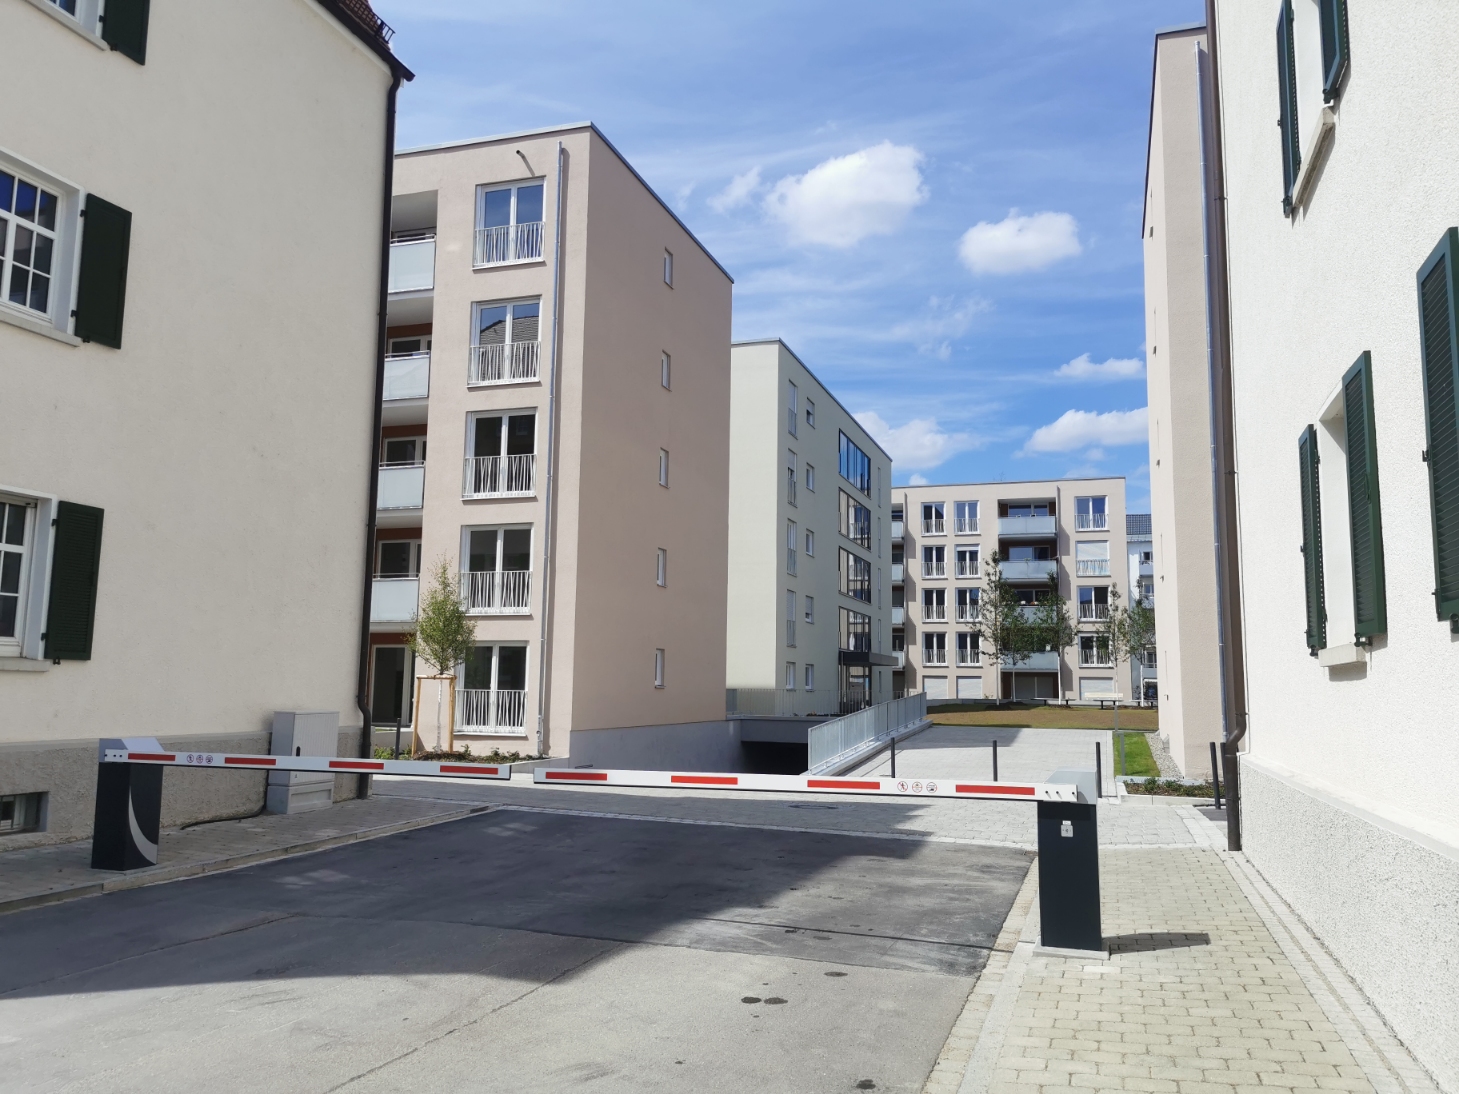 Ulm, Neubau, Quartier, Postdörfle, Juli 2020